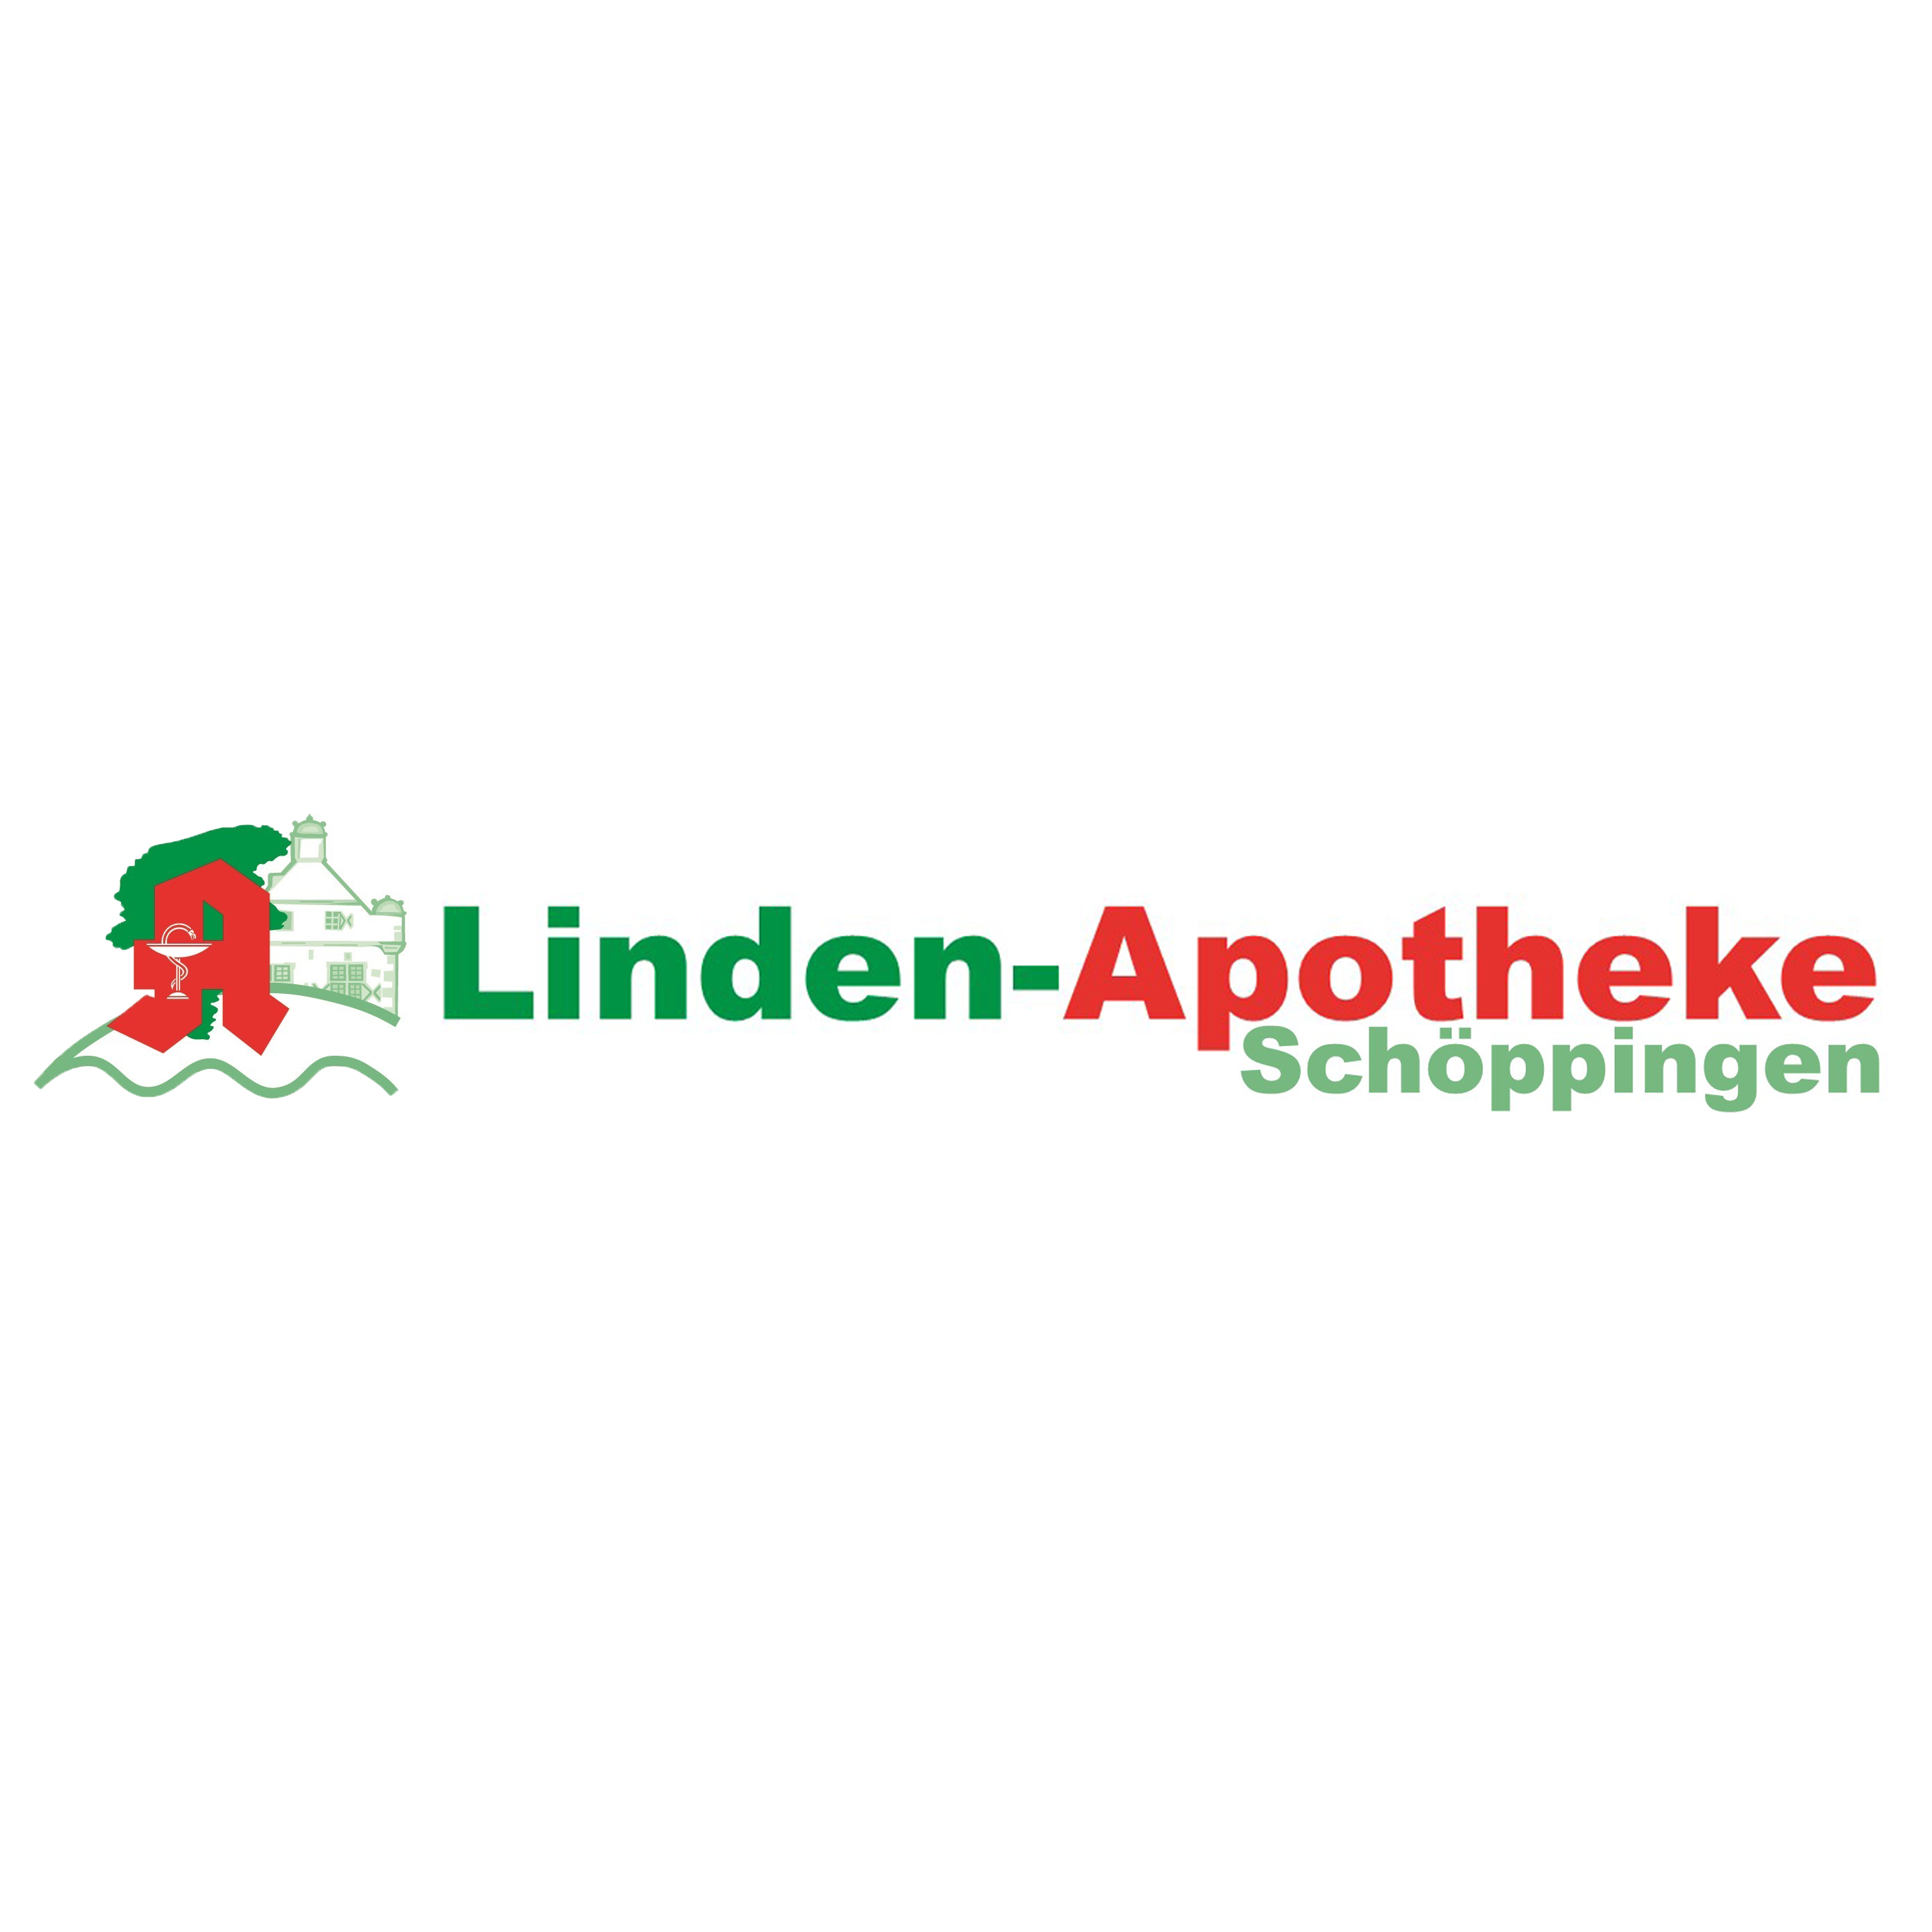 Linden-Apotheke in Schöppingen - Logo